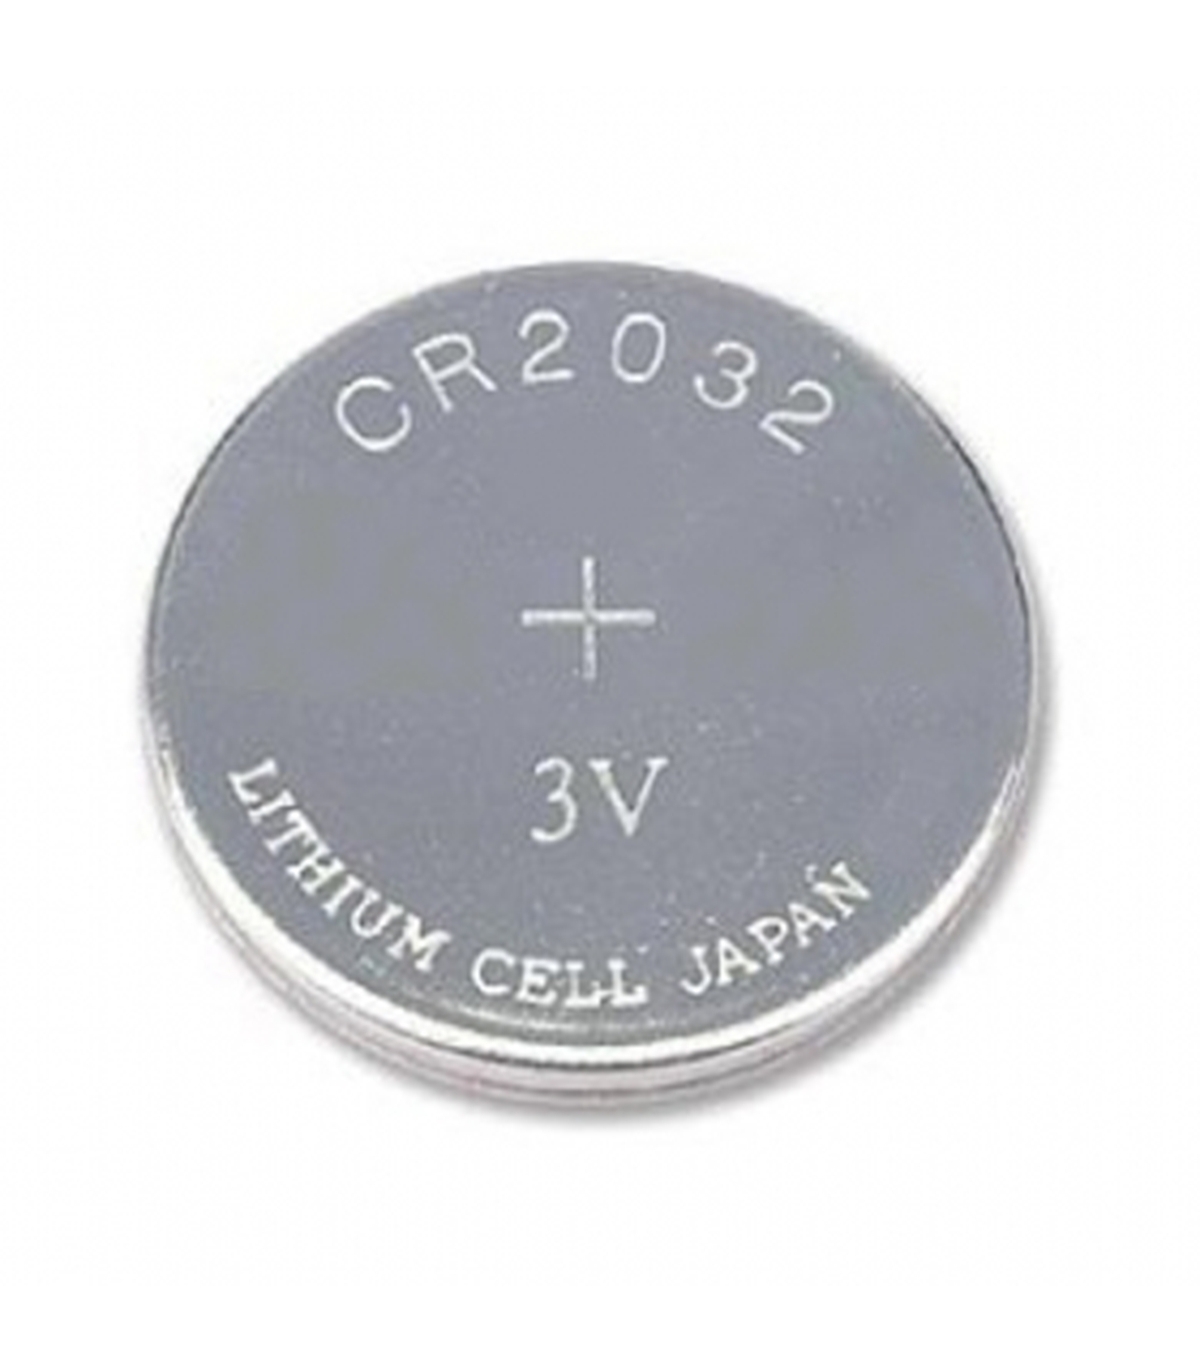 Pilha de lítio CR2032 3.0V 220mAh